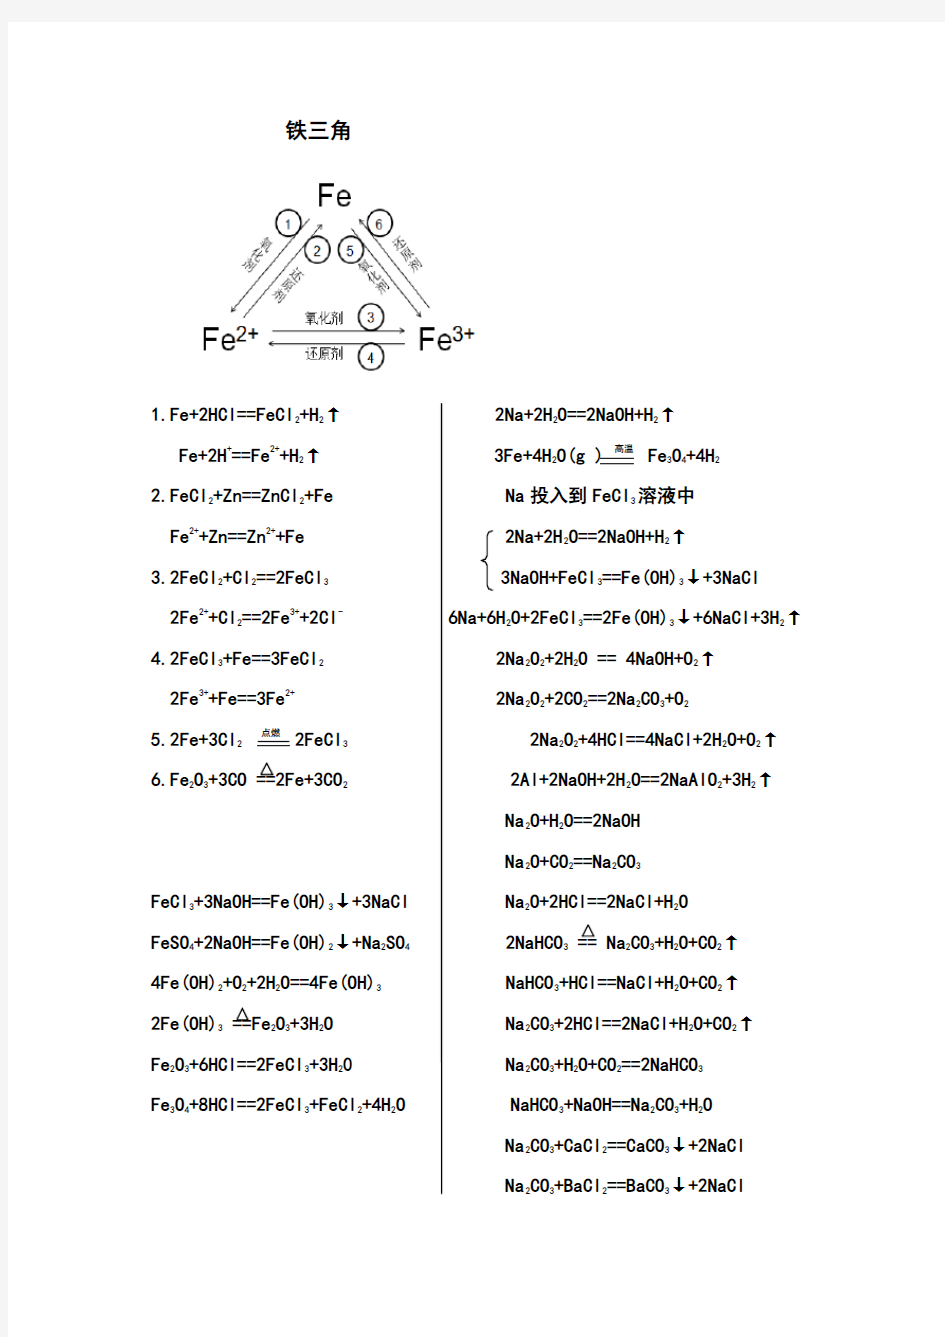 铝三角铁三角化学方程式总结(修改版)